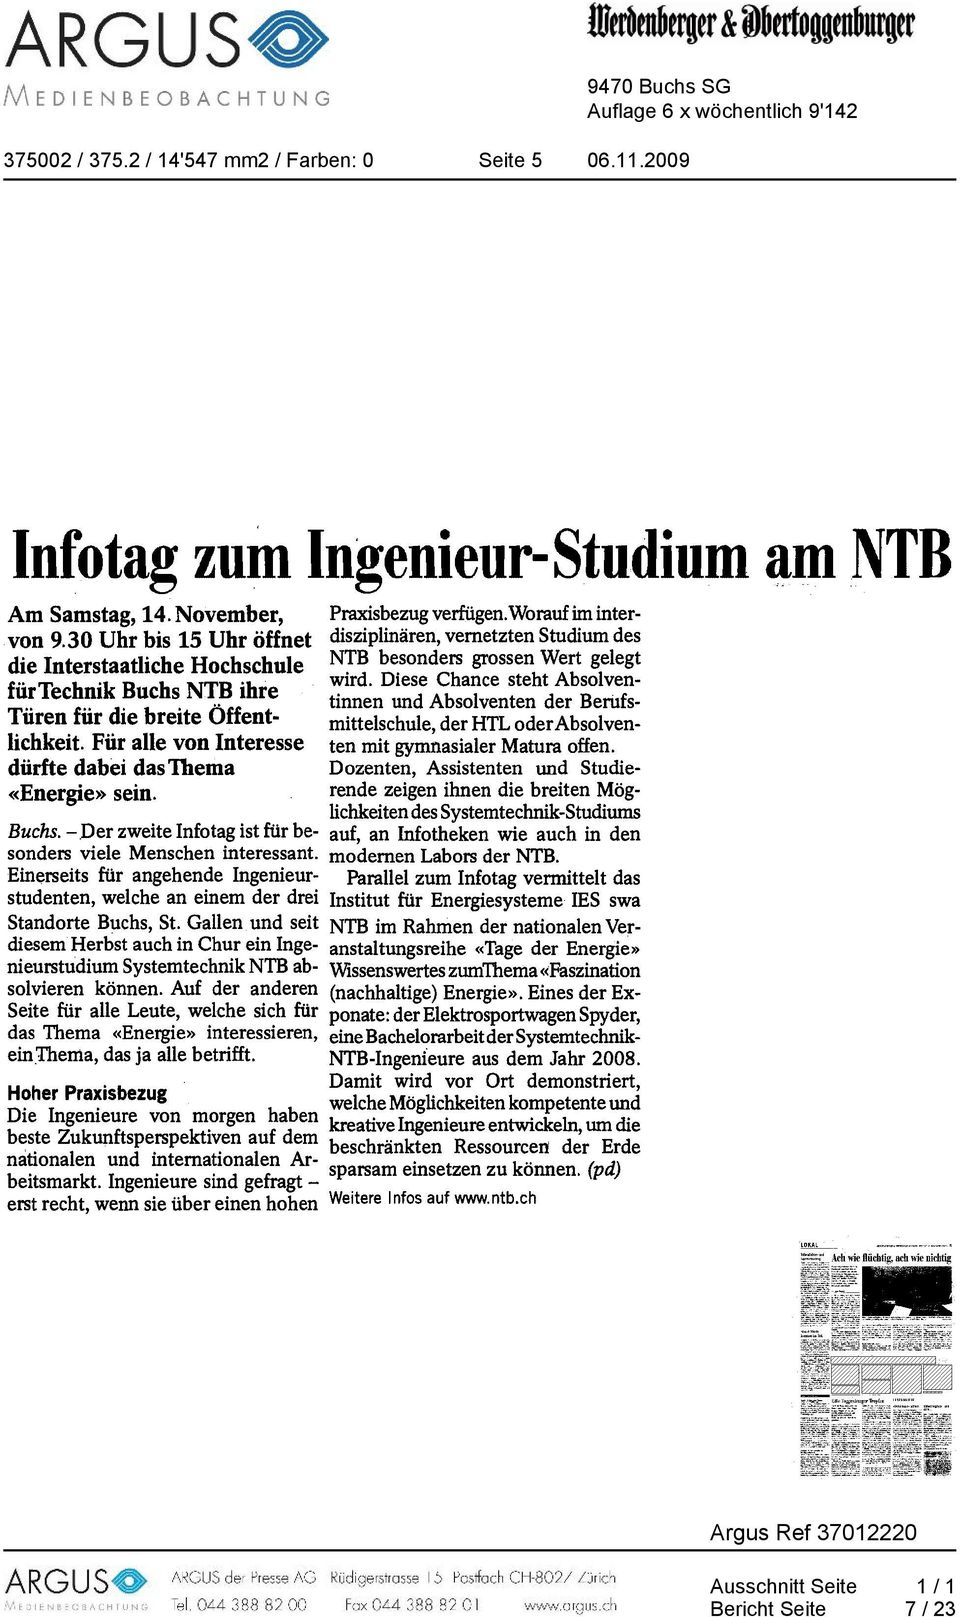 Einerseits für angehende Ingenieurstudenten, welche an einem der drei Standorte Buchs, St. Gallen und seit diesem Herbst auch in Chur ein Ingenieurstudium Systemtechnik NTB absolvieren können.